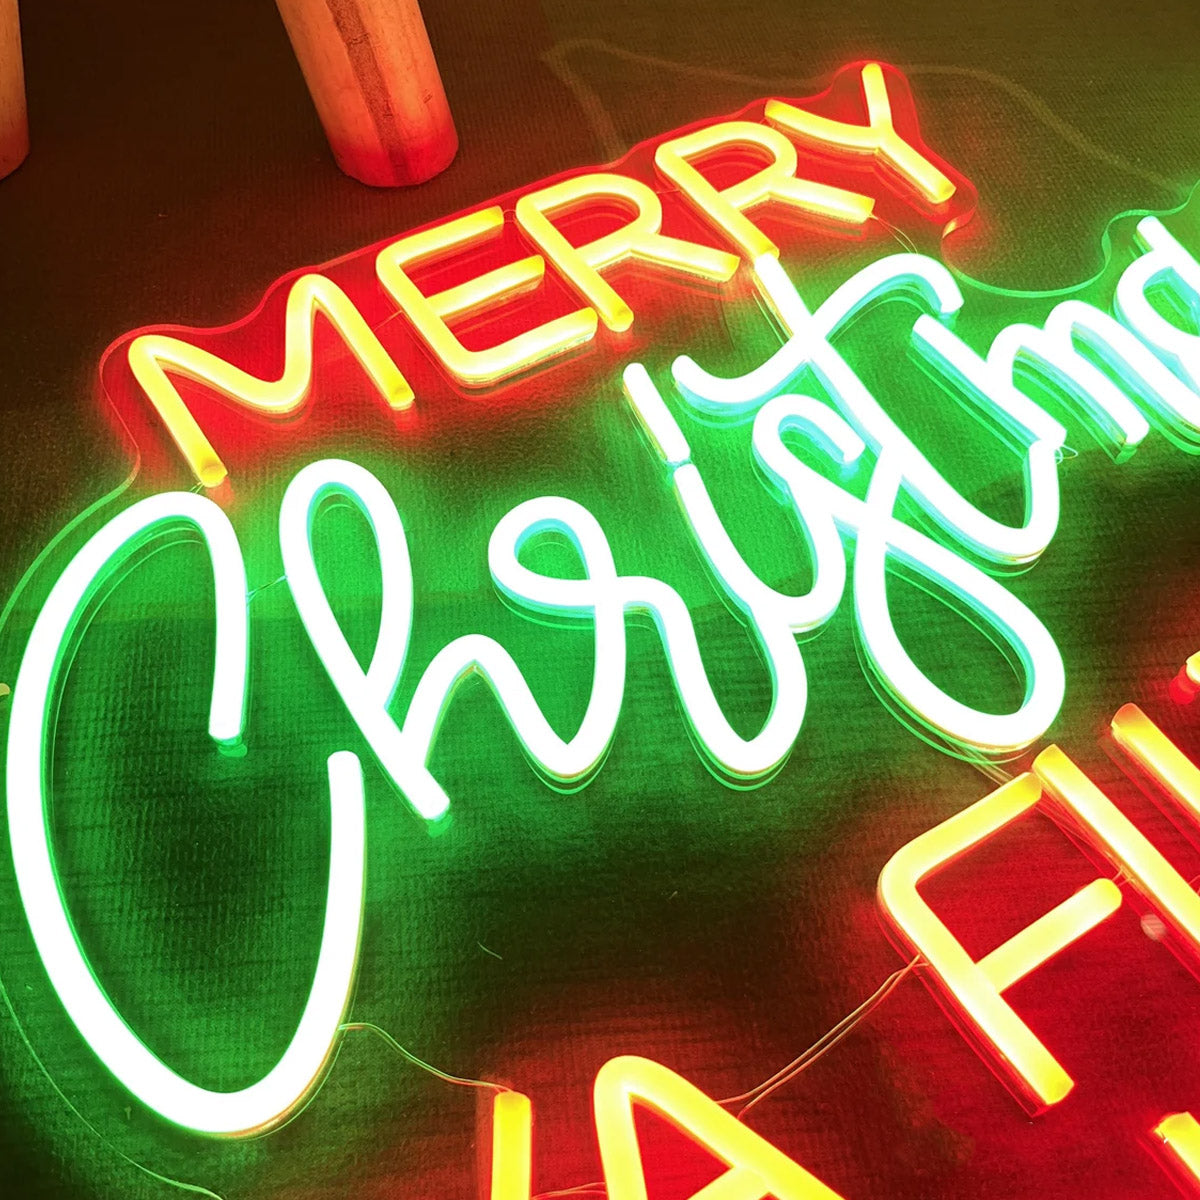 NEONIP-100% fatto a mano Ya Filthy Animal Merry Christmas Neon Sign Decorazioni natalizie